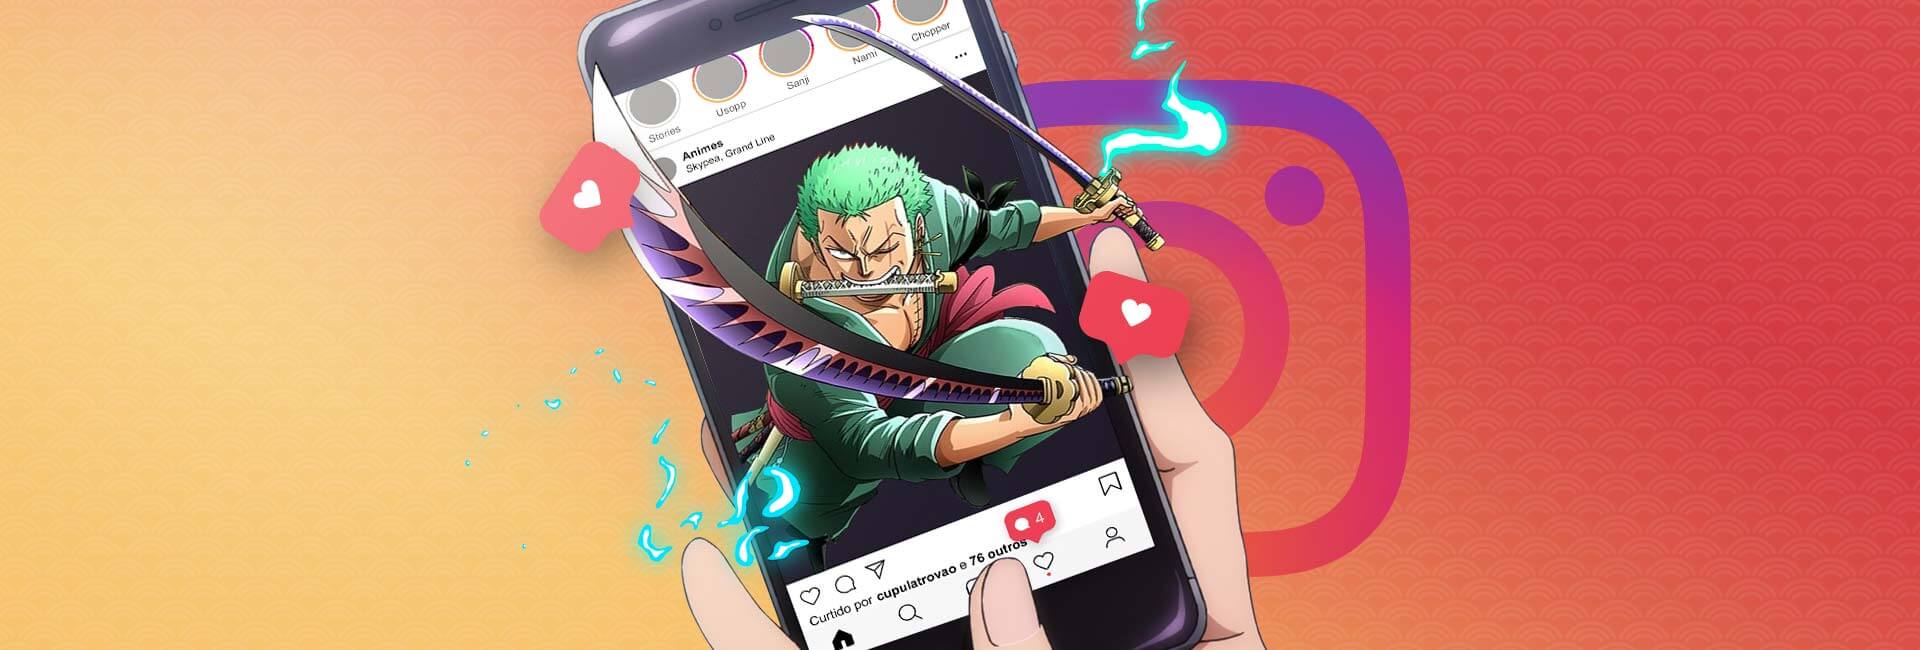 na imagem mostra um smartphone com o aplicativo do instagram aberto, na imagem aparece o Zoro de One Piece, saindo da tela do celular